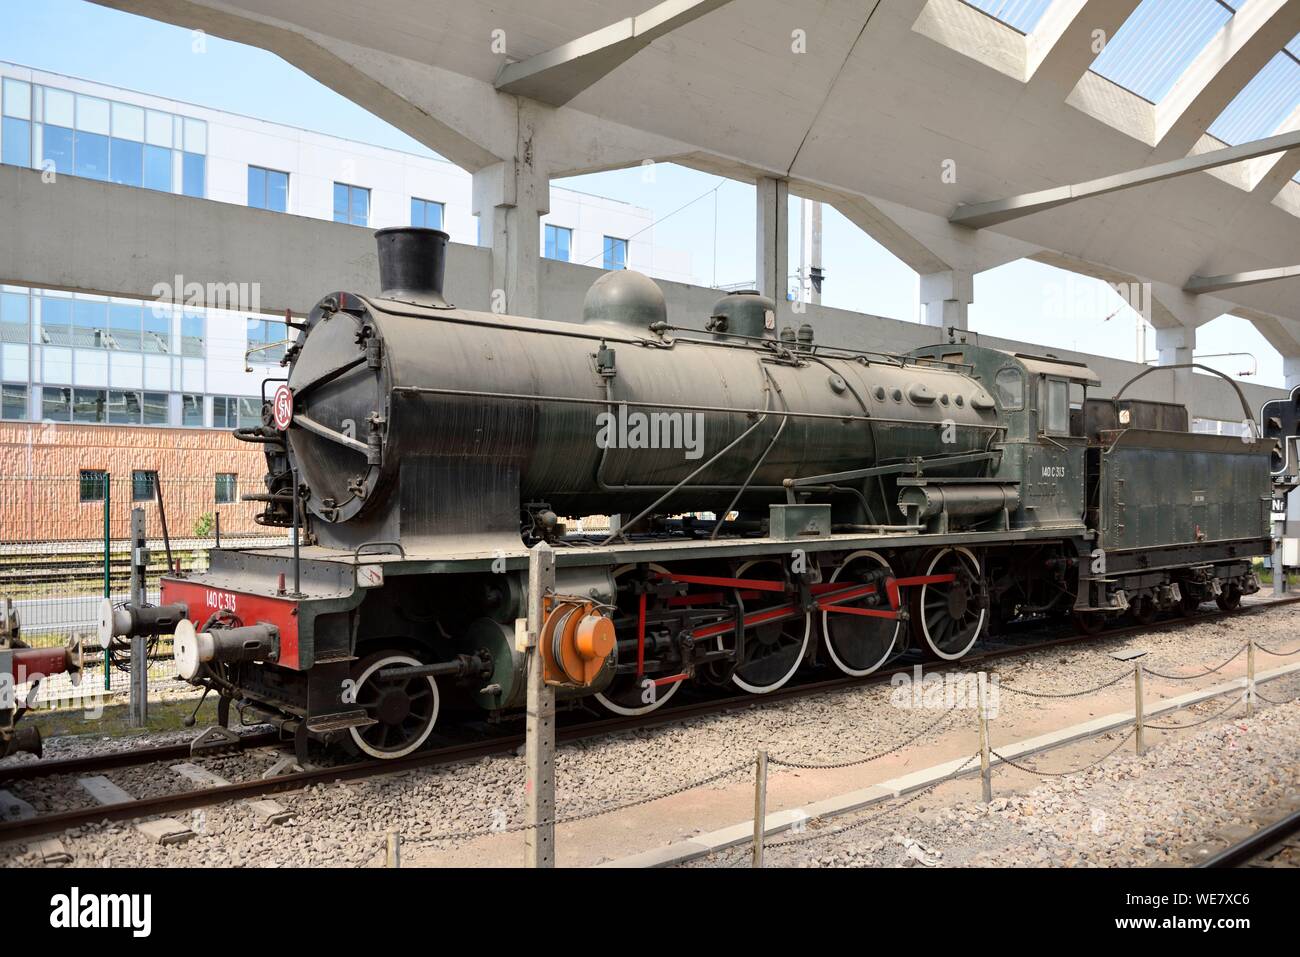 France, Marne, Reims, la gare, la locomotive 140 C 313 utilisée de 1913 à 1920 et exposés dans la gare Banque D'Images